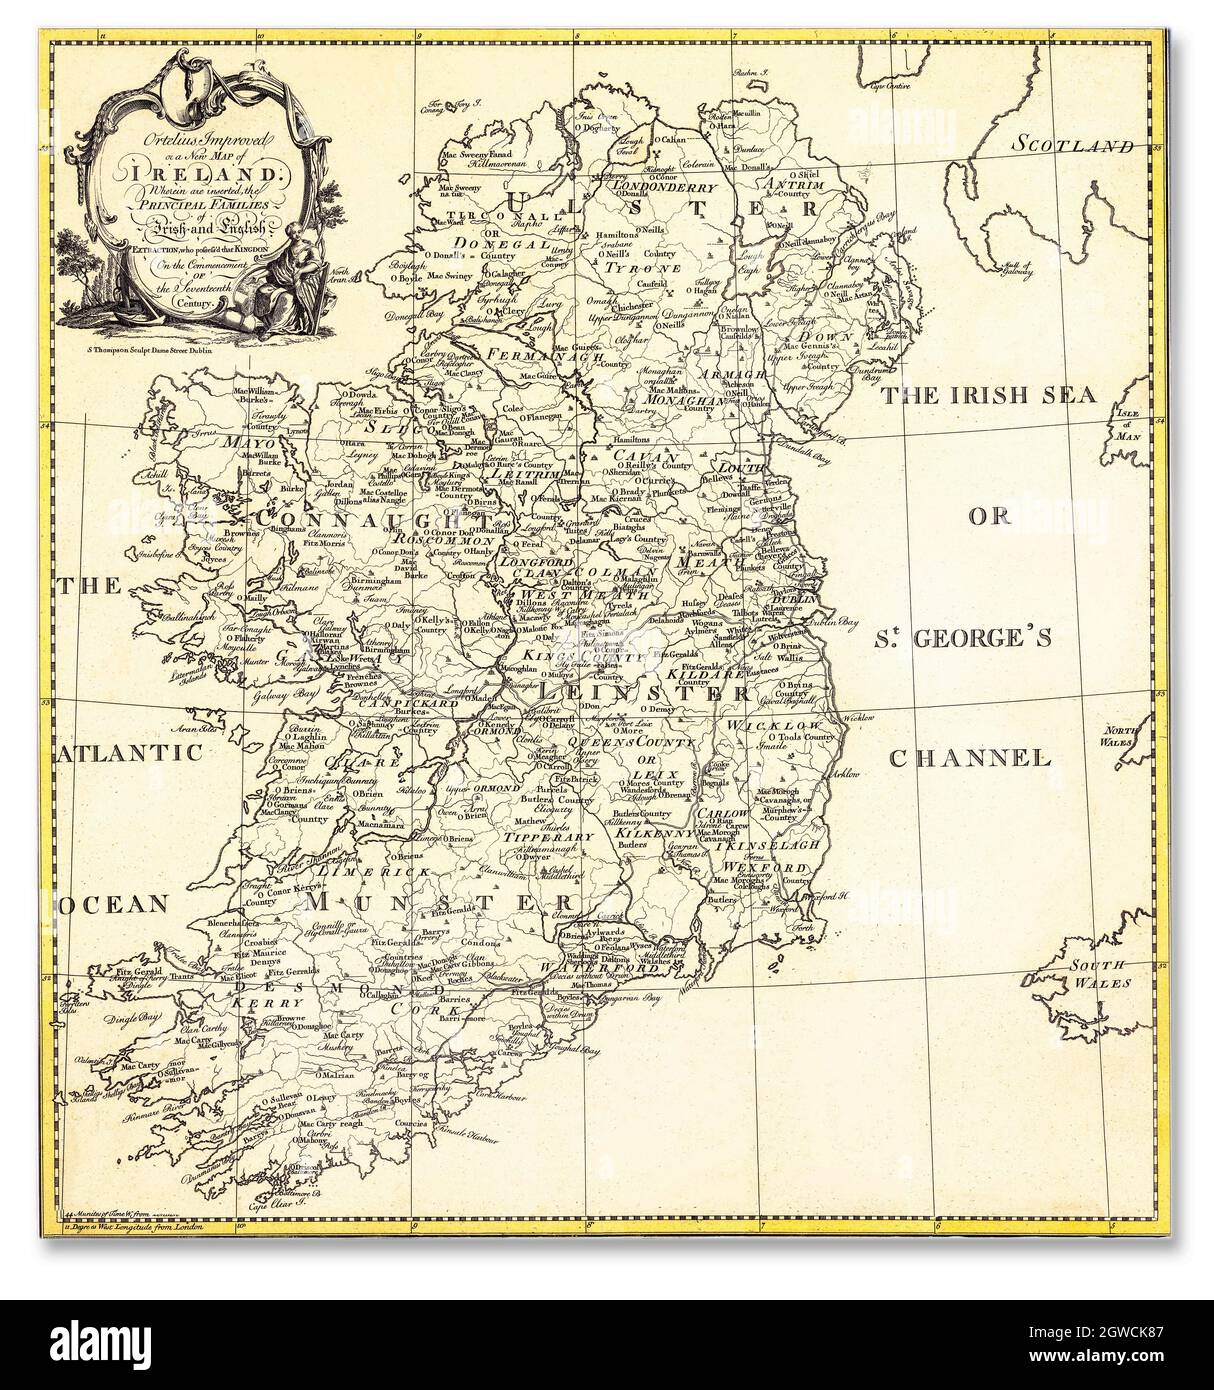 Ortelius migliorato, o una nuova mappa dell'Irlanda: In cui sono inserite le principali famiglie di estrazione irlandese e inglese che possedevano il regno all'inizio del XVII secolo. Creato dall'incisore S. Thompson, a Dublino, circa 1795. Foto Stock